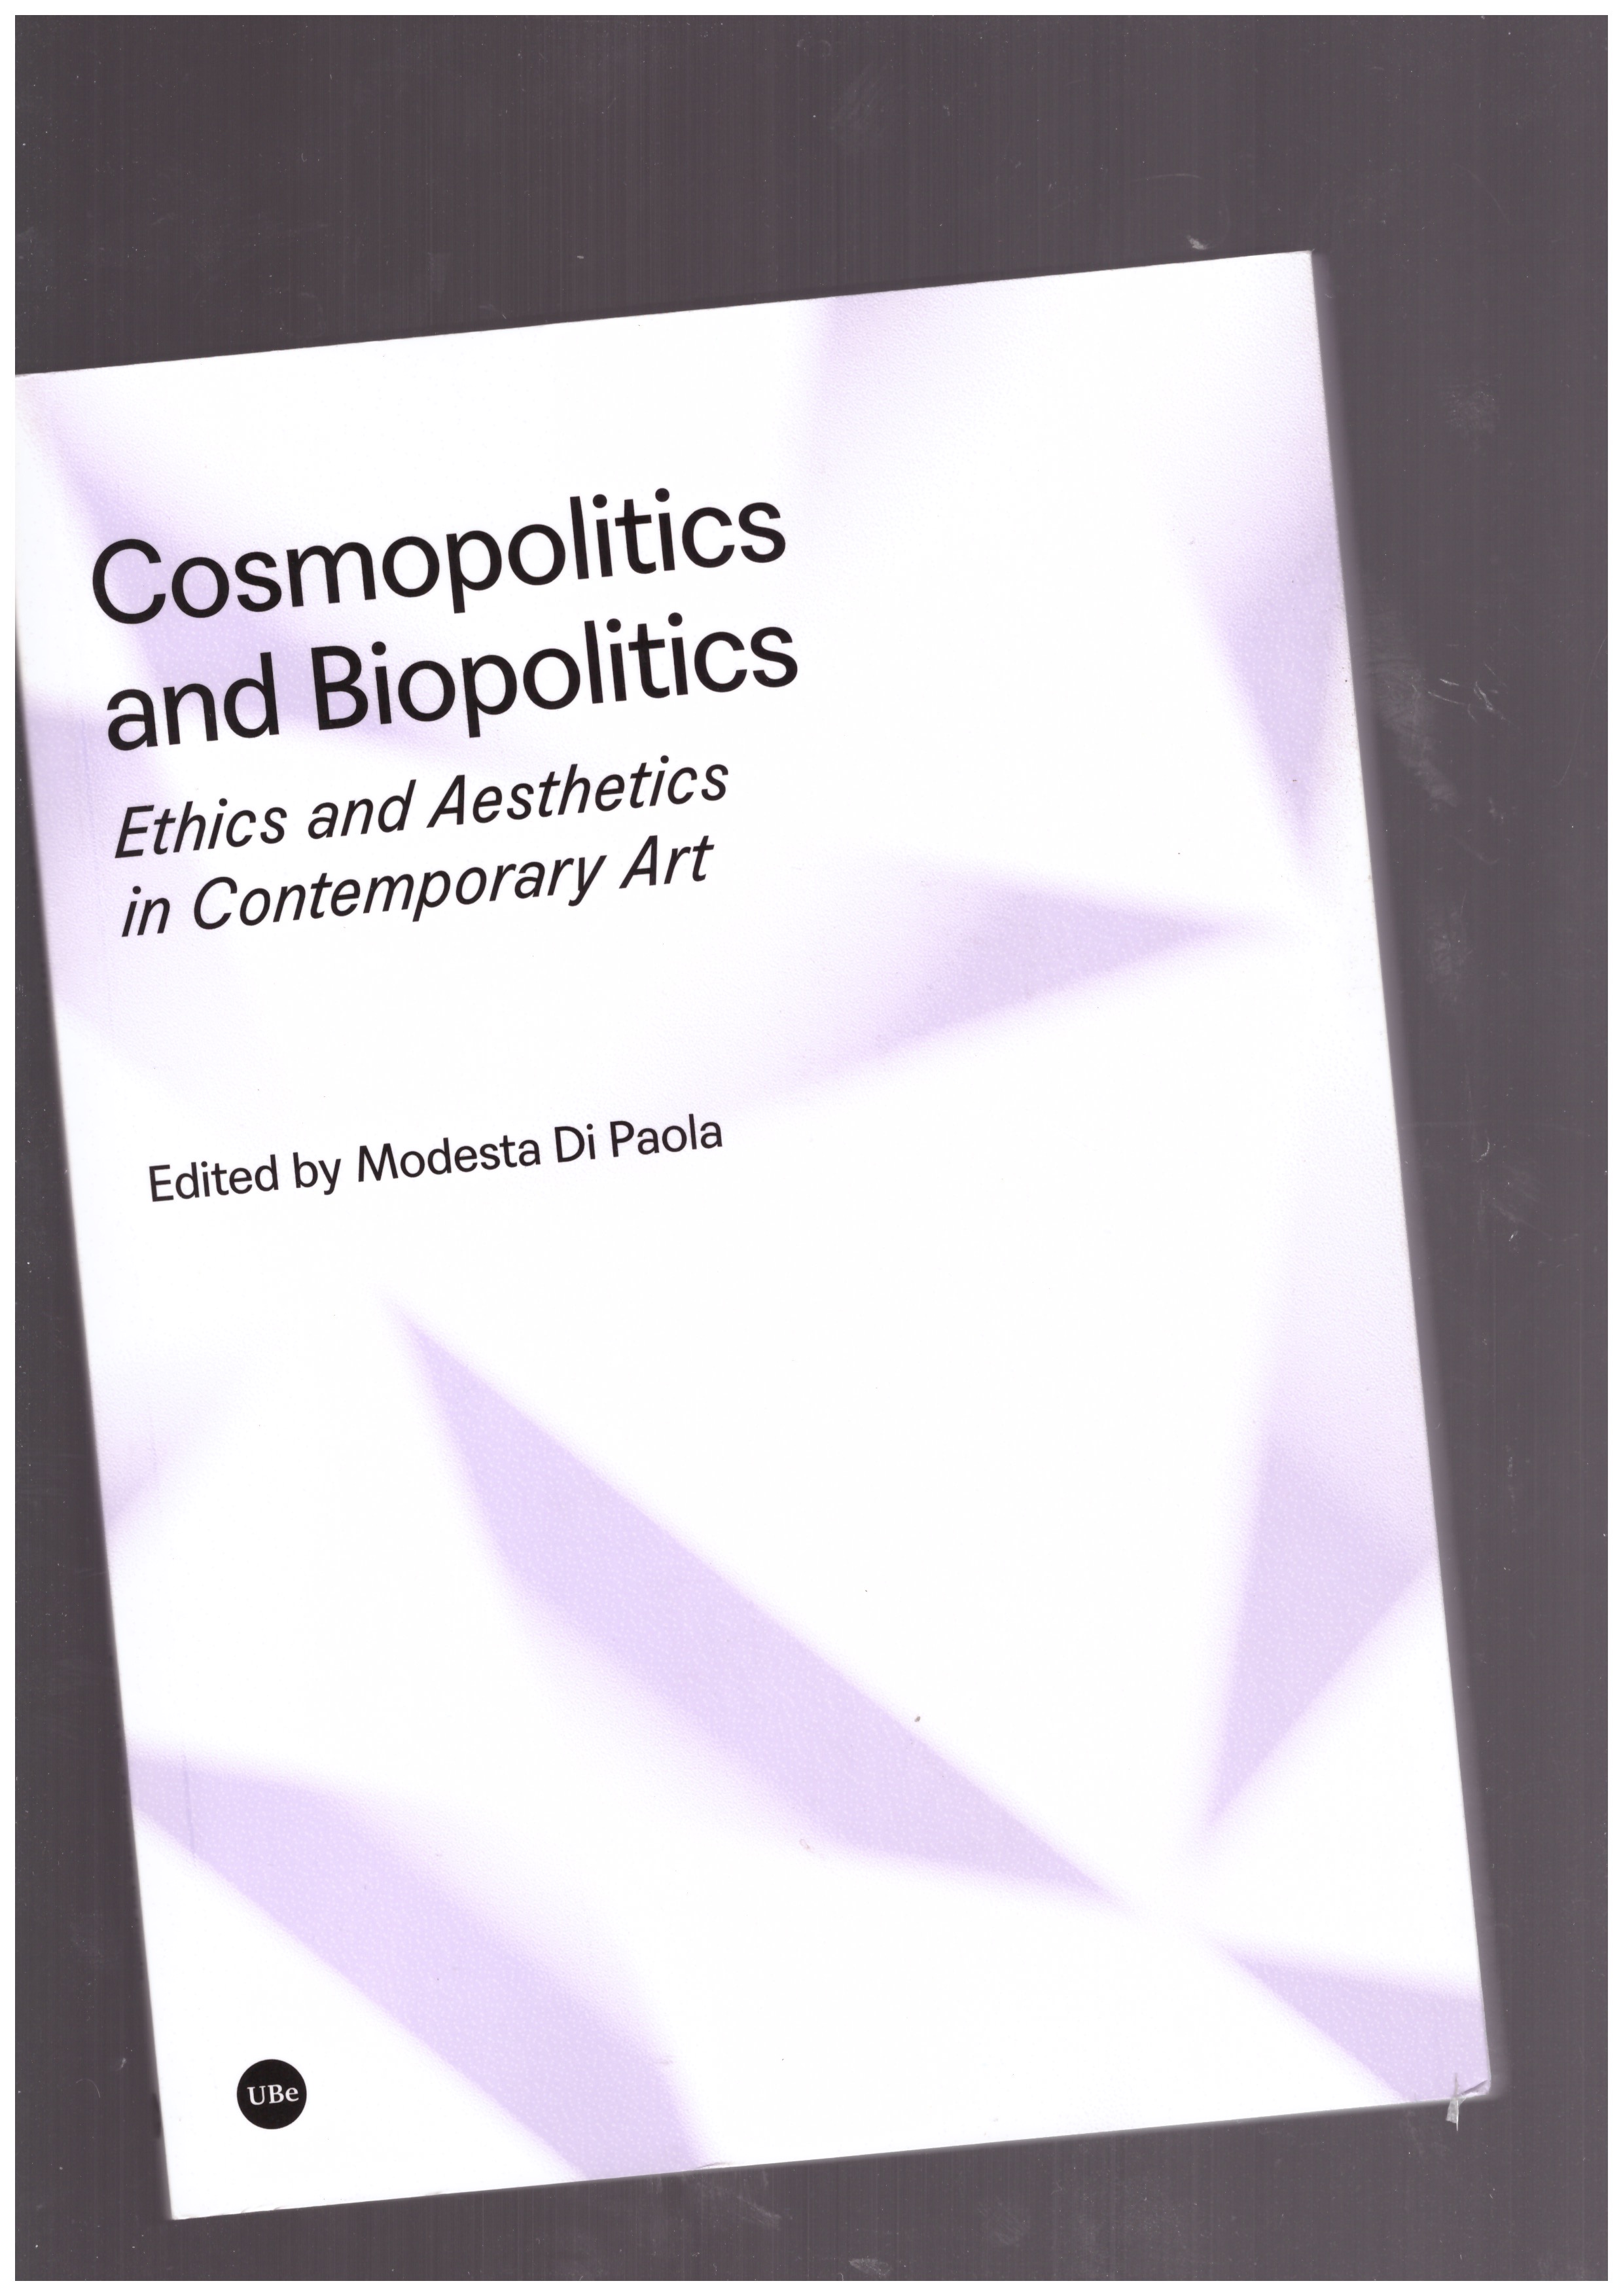 DI PAOLA, Modesta - Cosmopolitics and Biopolitics